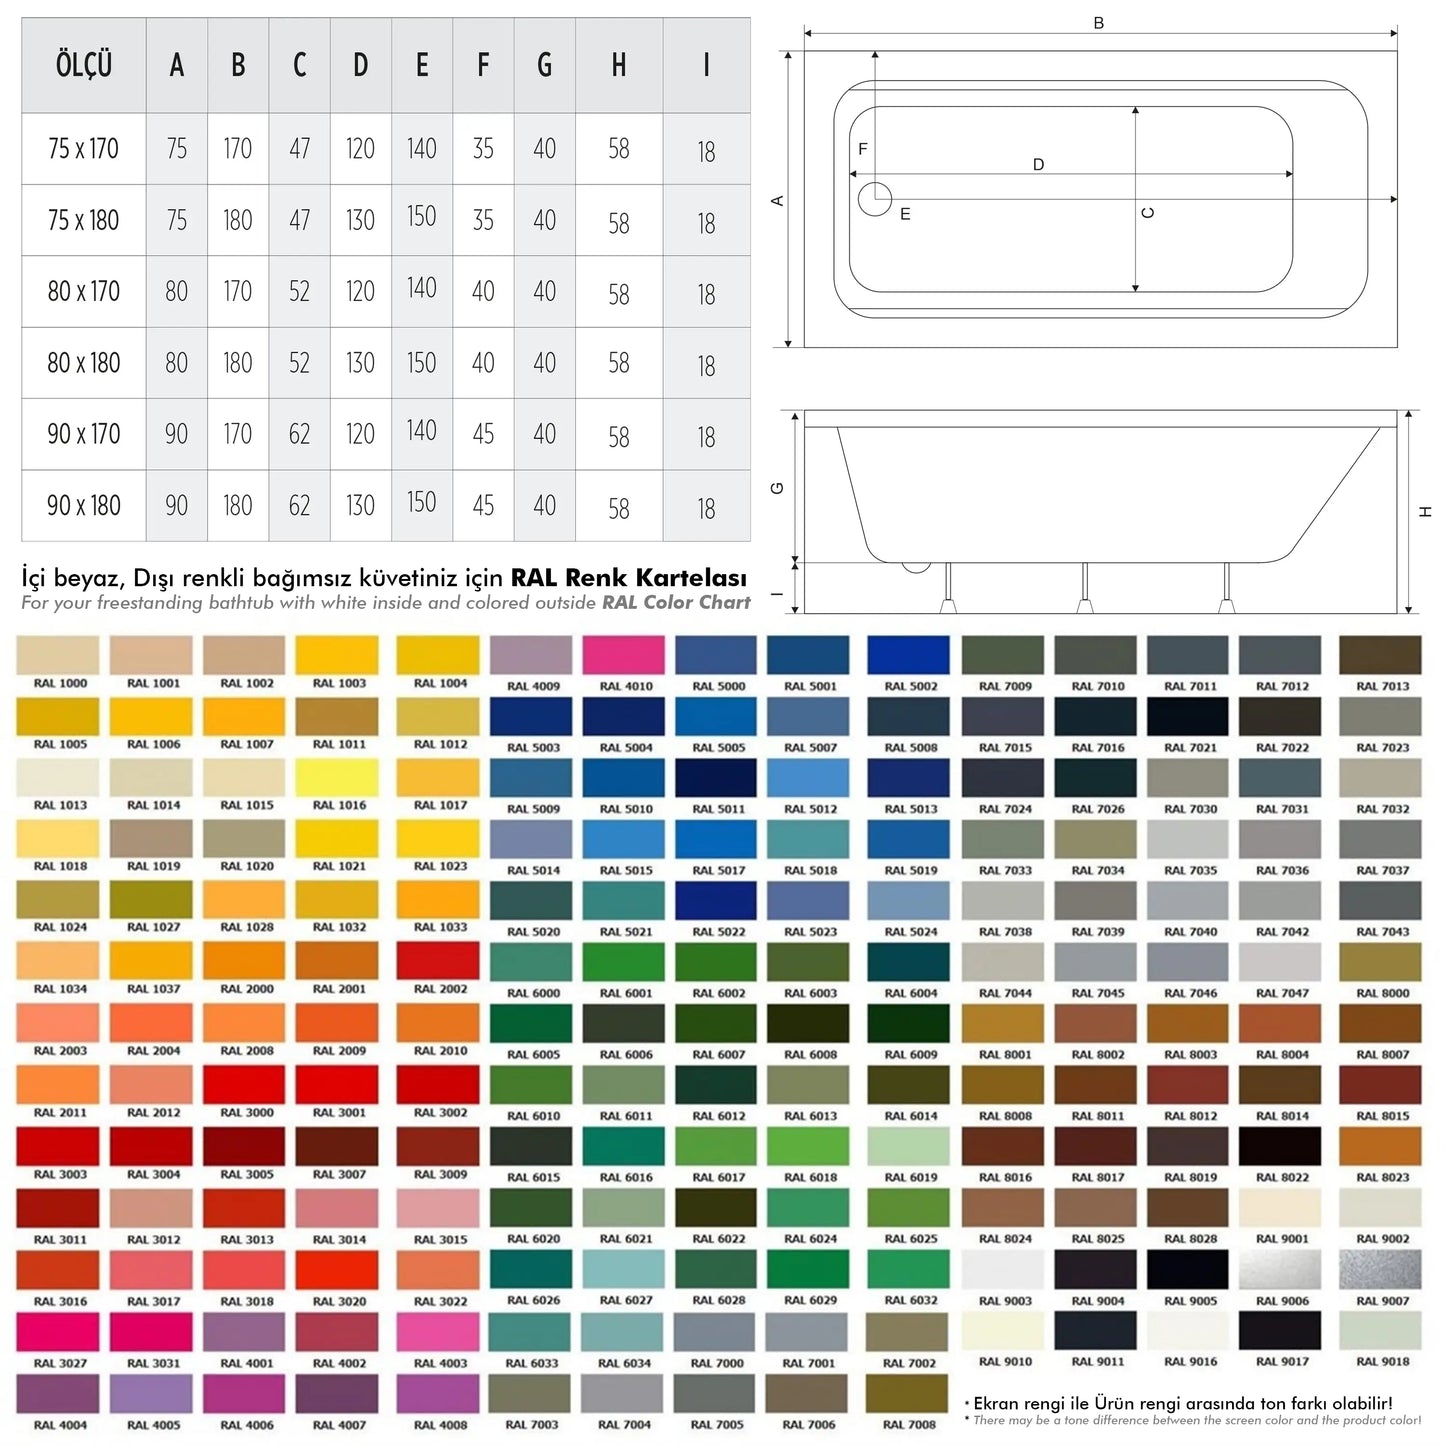 Sharp Colorful bağımsız küvet RAL renkleri ve ölçüleri, Türkiye